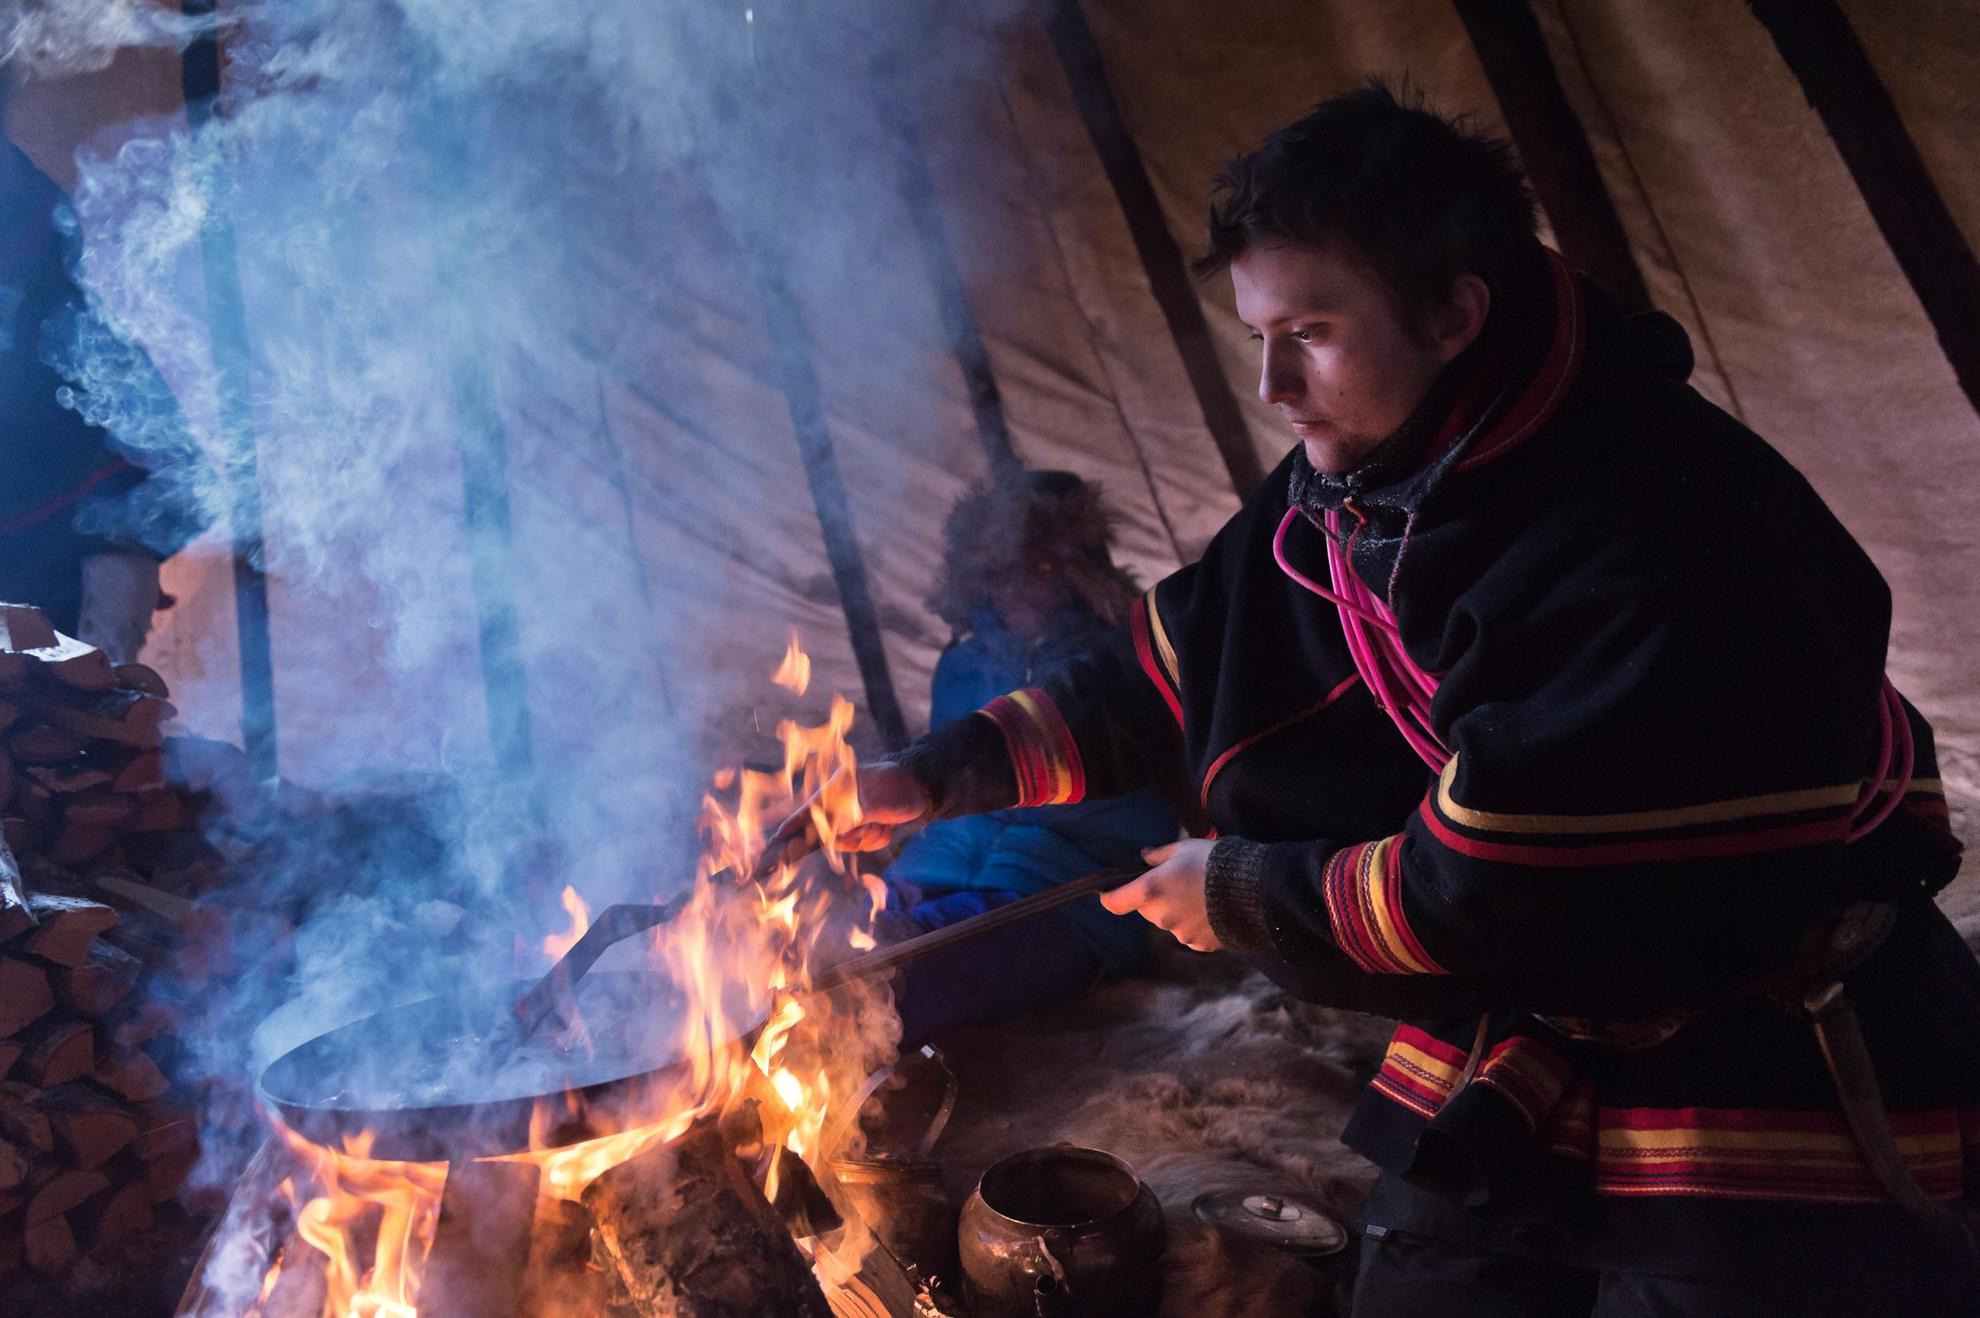 Een persoon in Sami klederdracht kookt boven een vuur in het donker.